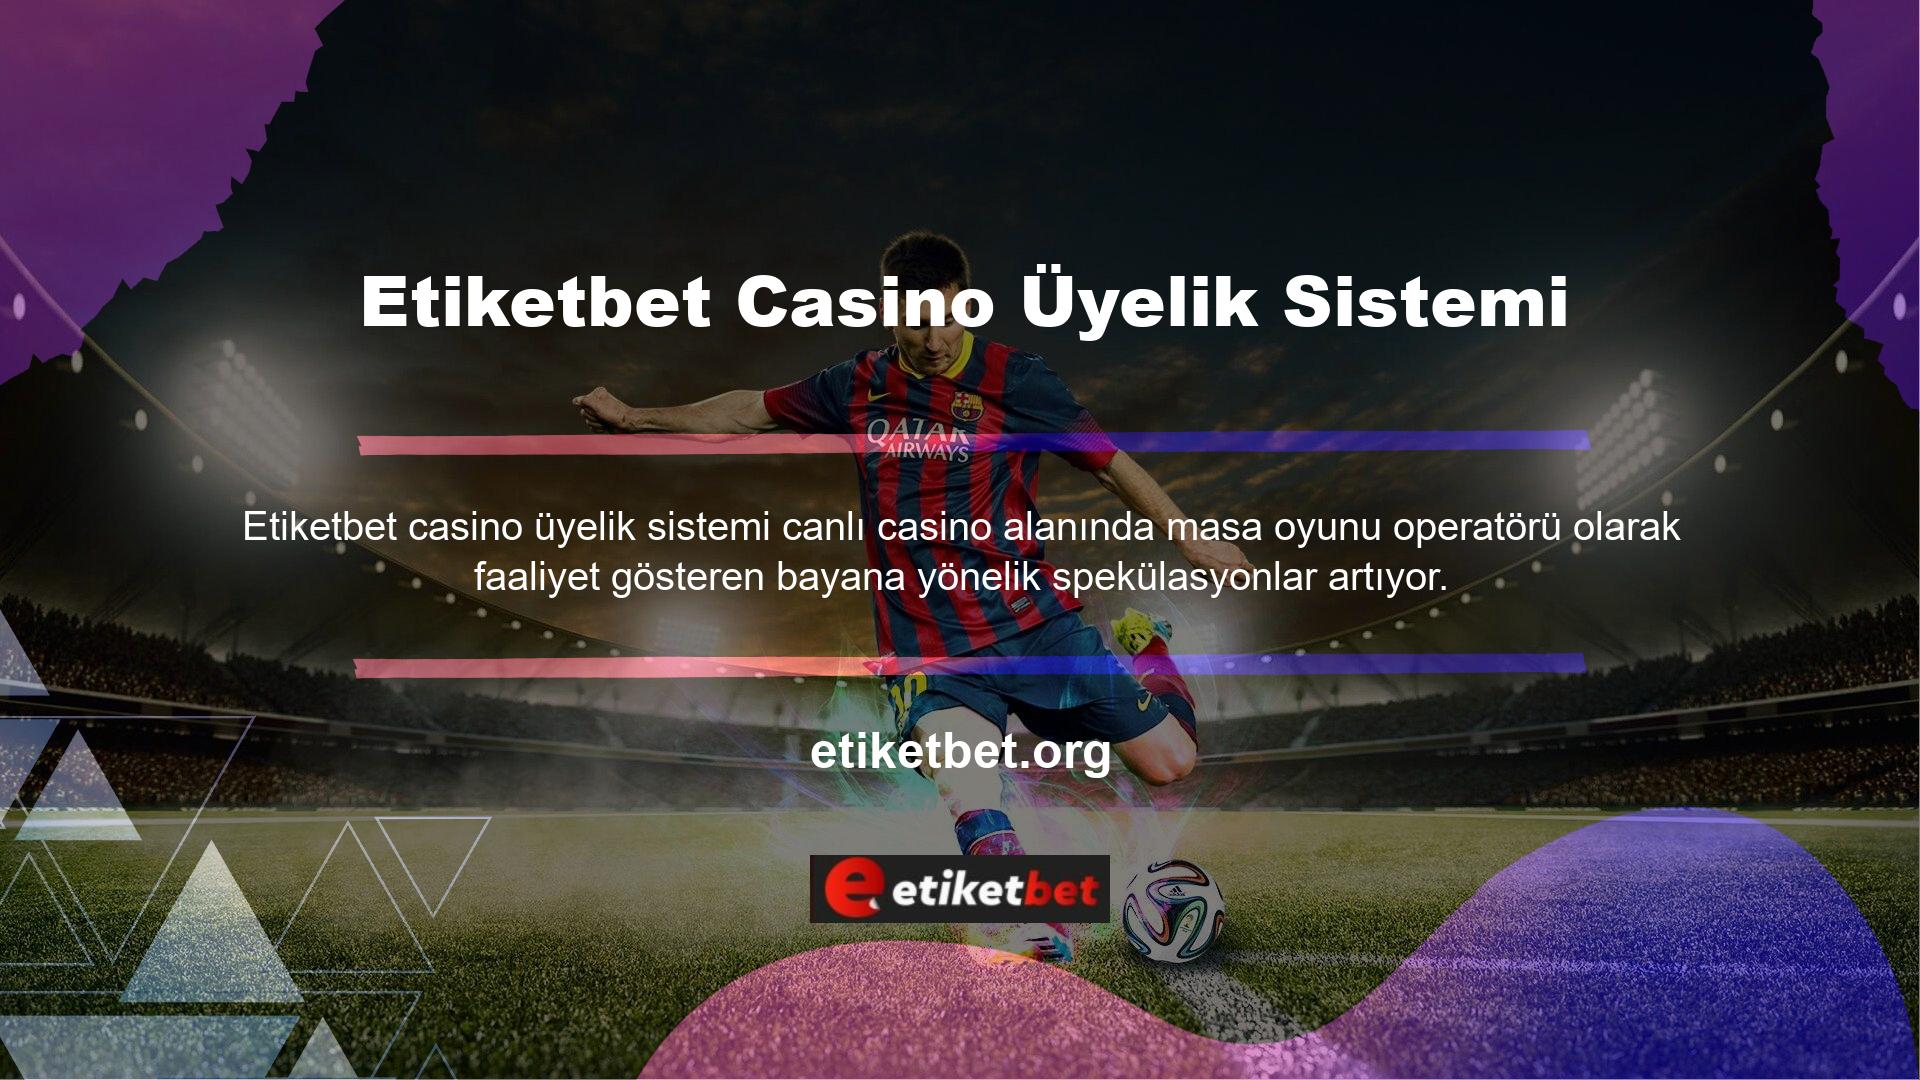 Gizli slot makineleri Etiketbet casino üyelik sistemi için potansiyel bir seçenektir